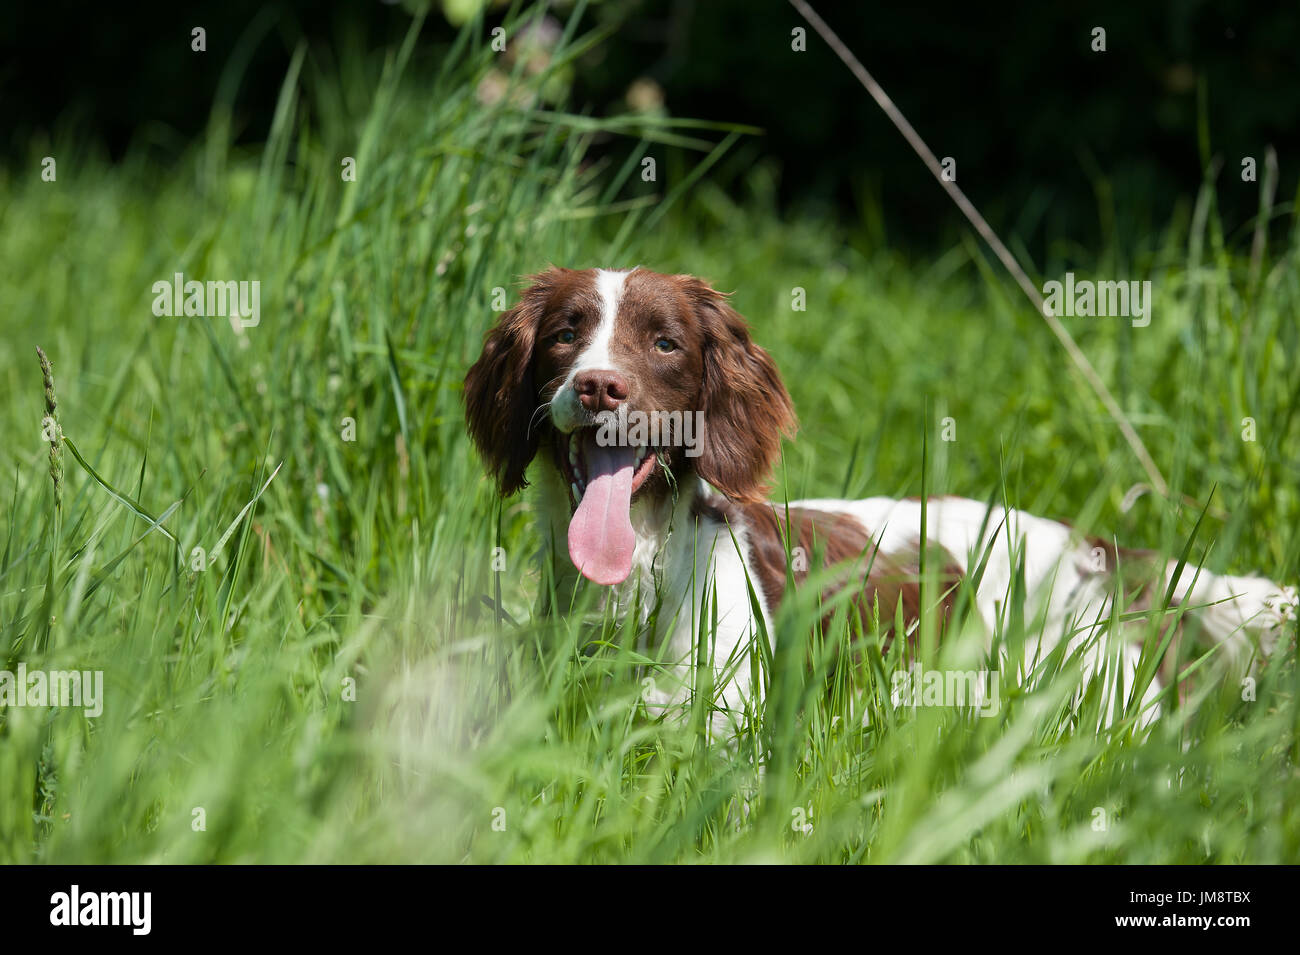 Springer spaniel in a field Stock Photo